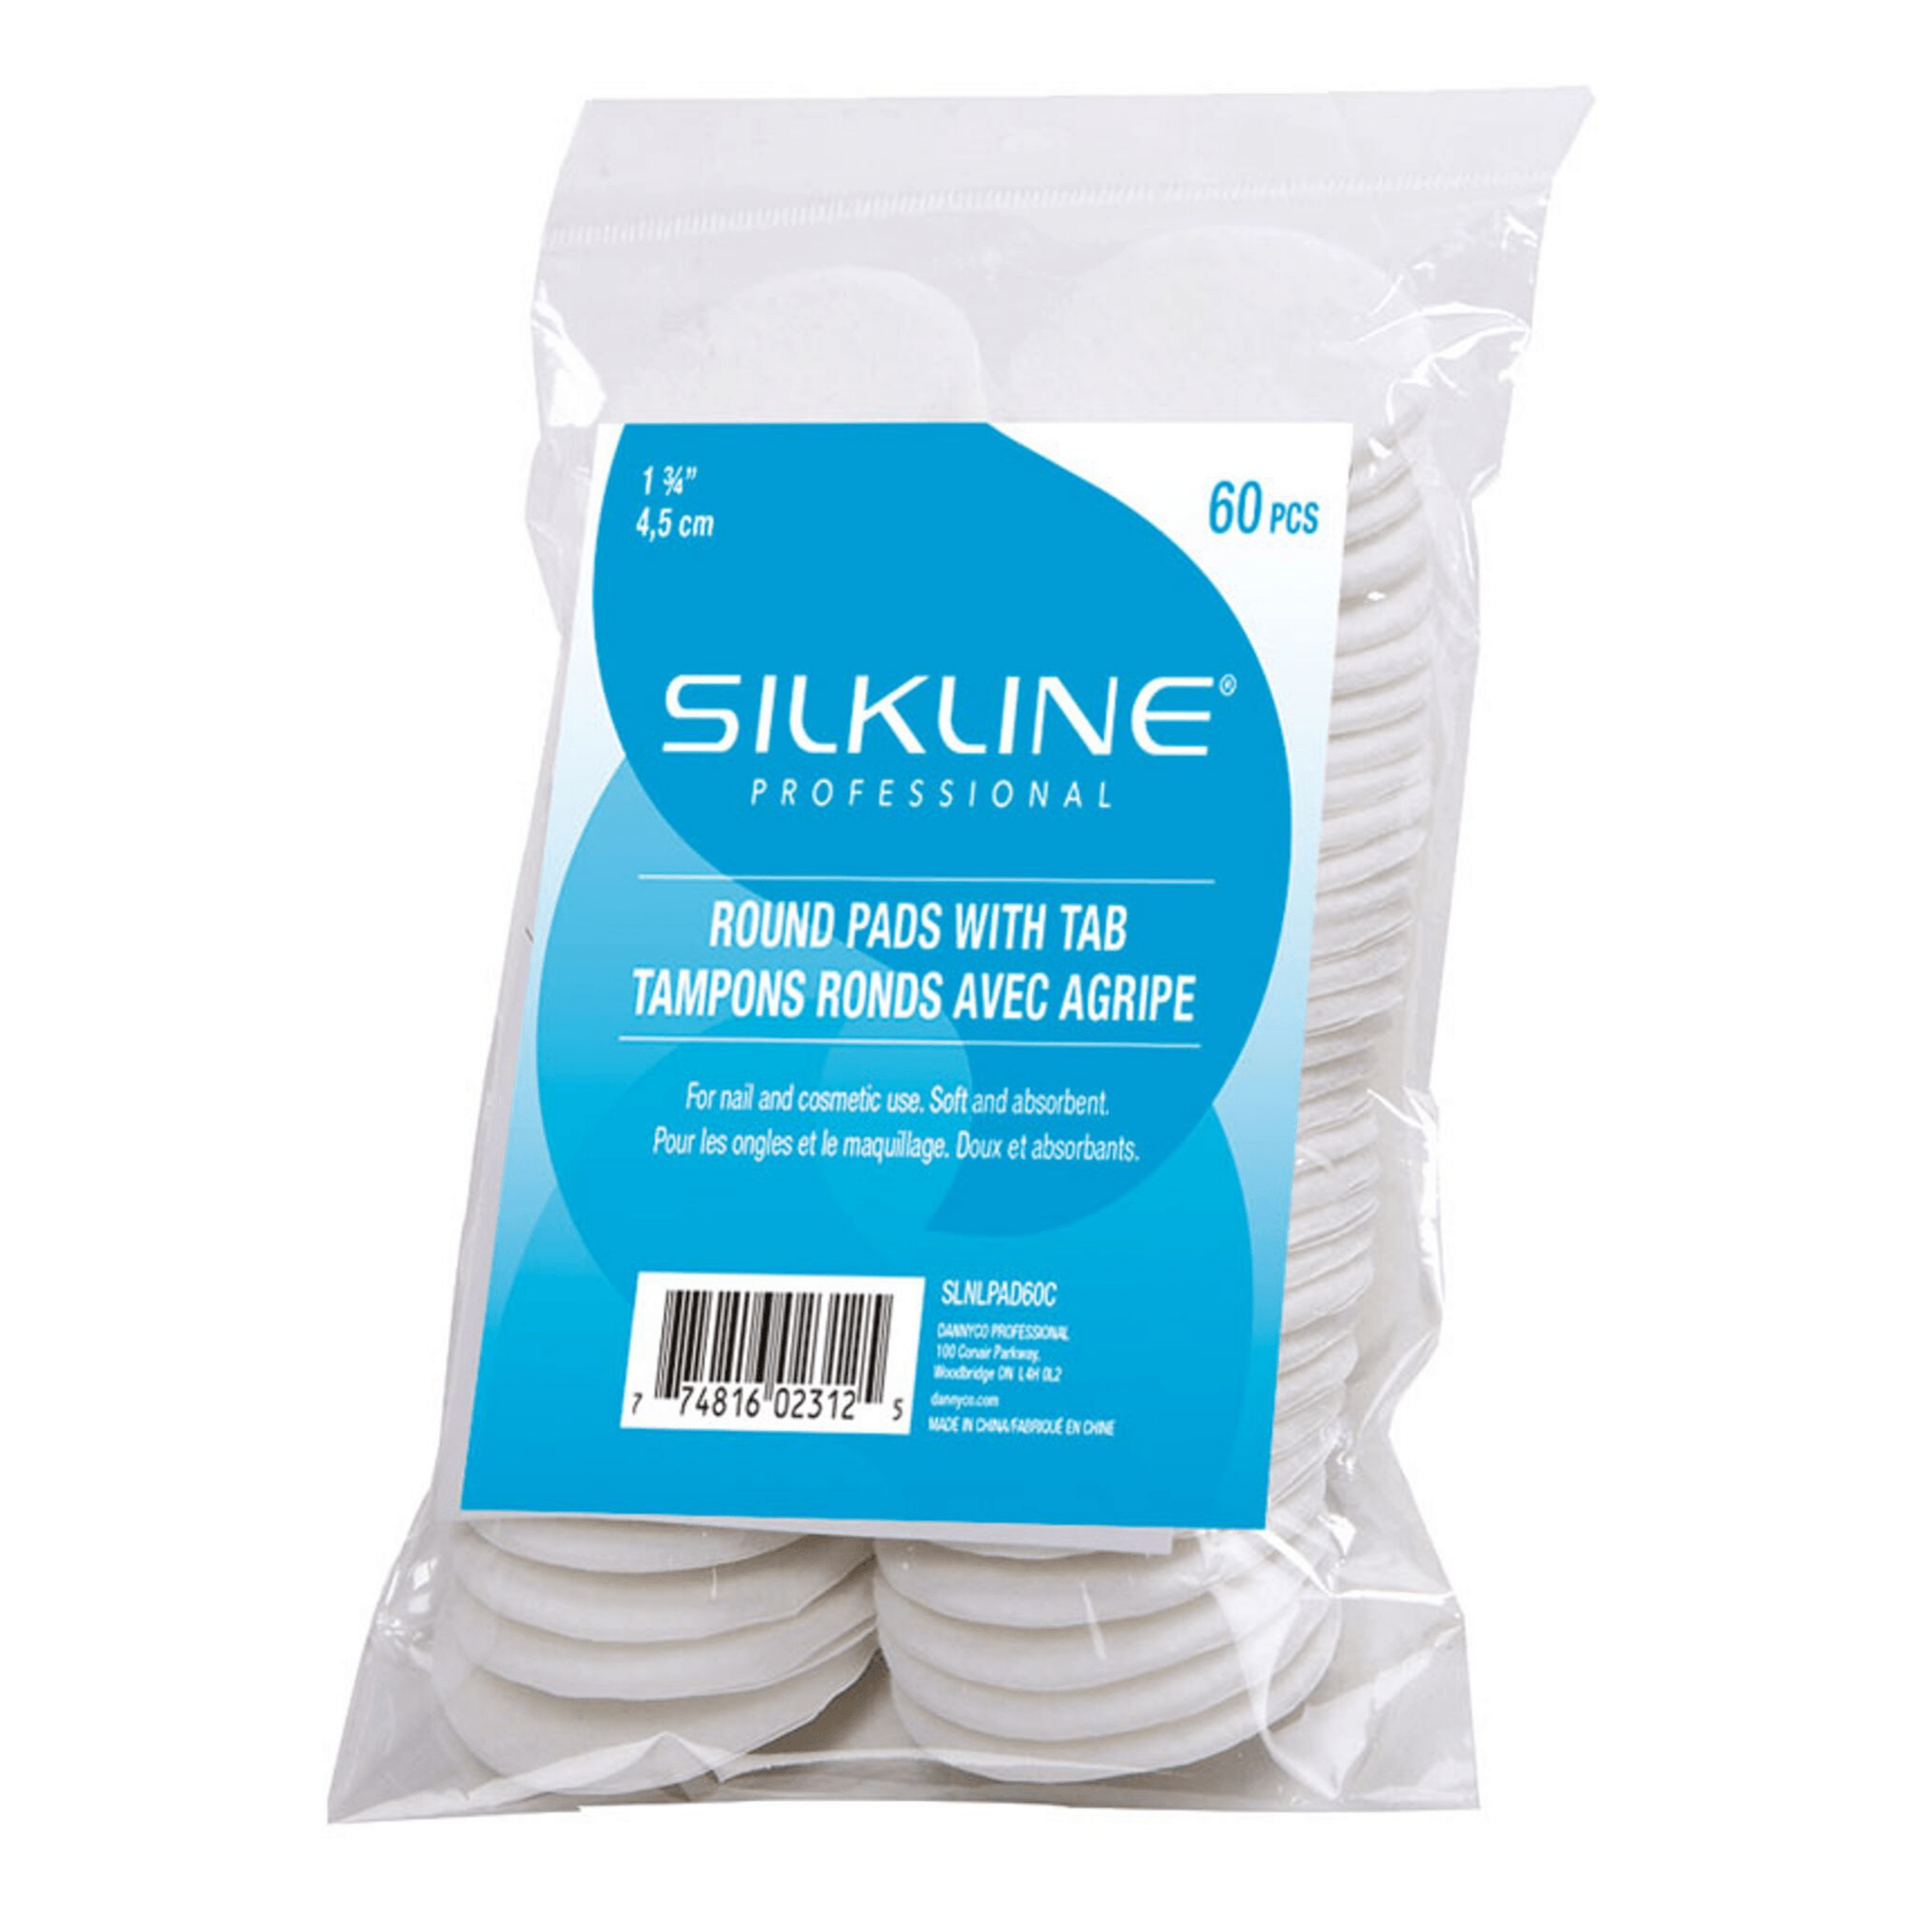 Silkline. Tampons ronds avec agripe - Concept C. Shop